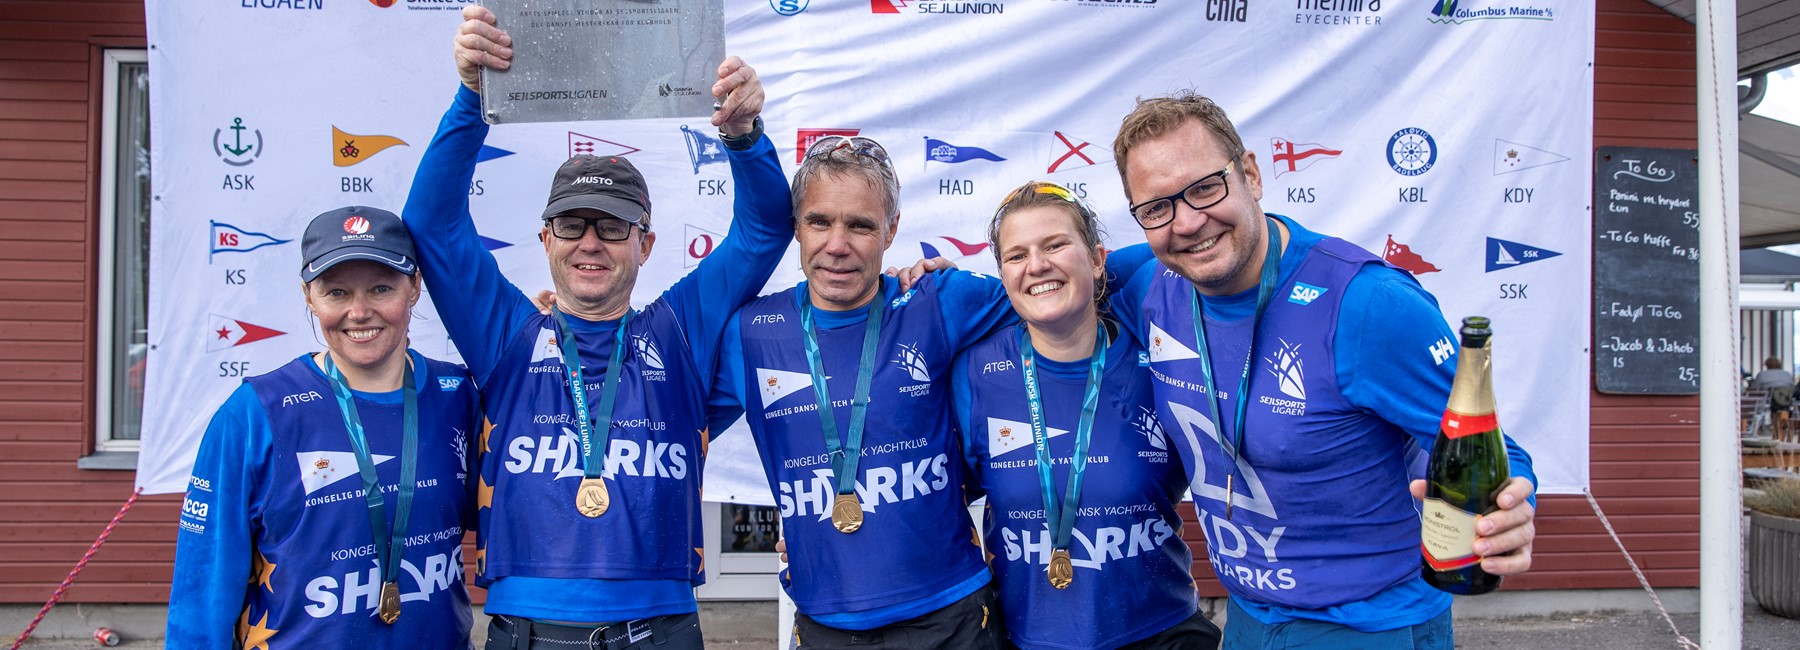 KDY SHARKS tager et år mere som dansk mester